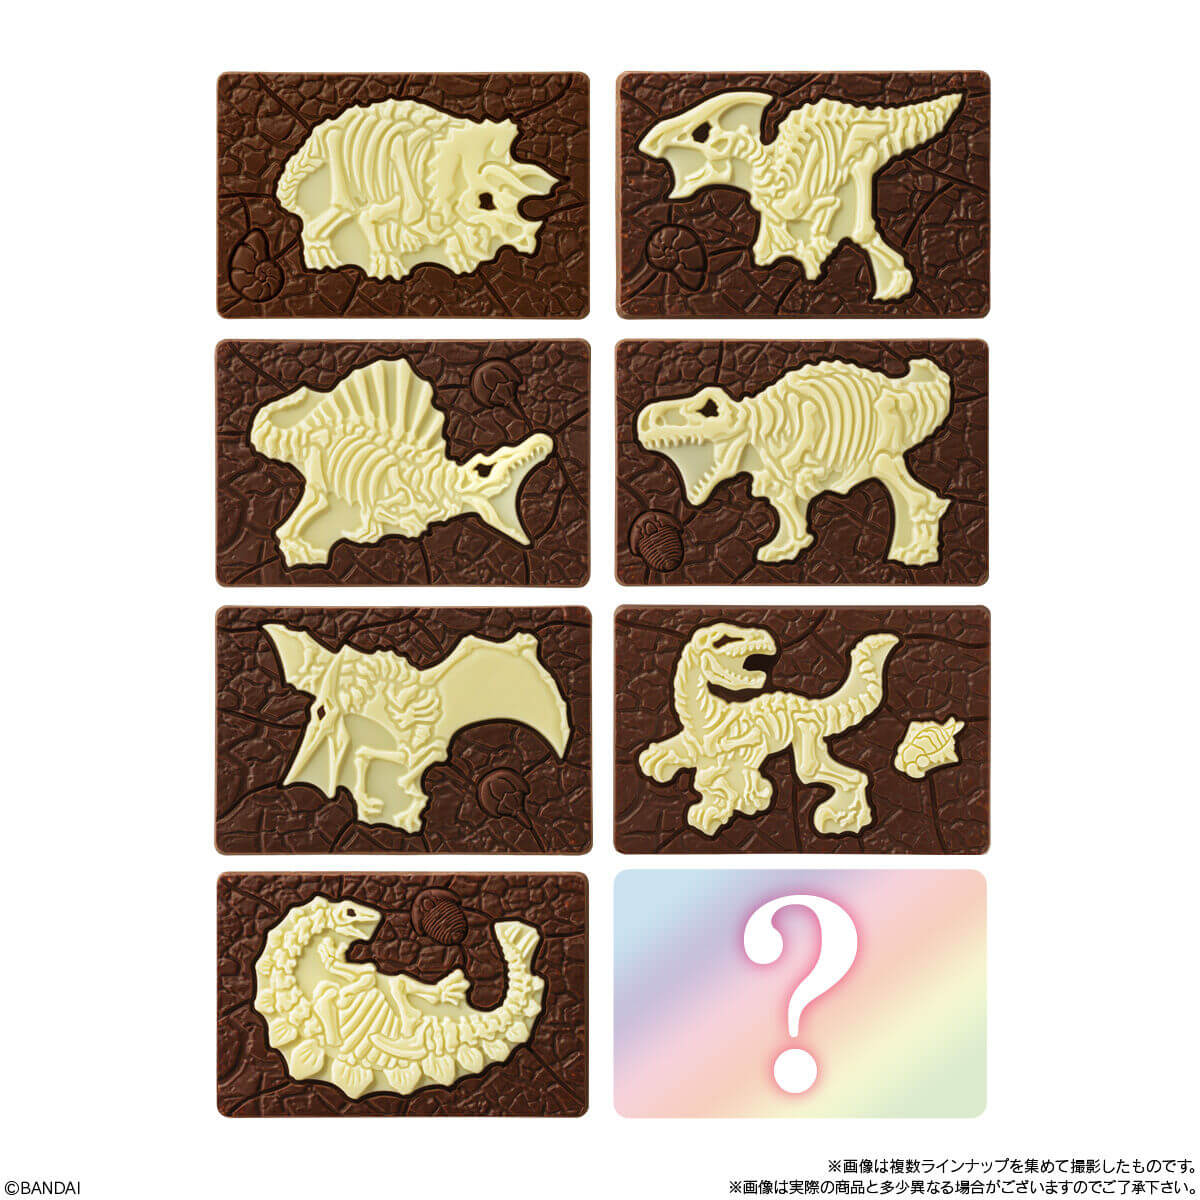 【キャラパキ発掘恐竜チョコ】全8種類の恐竜